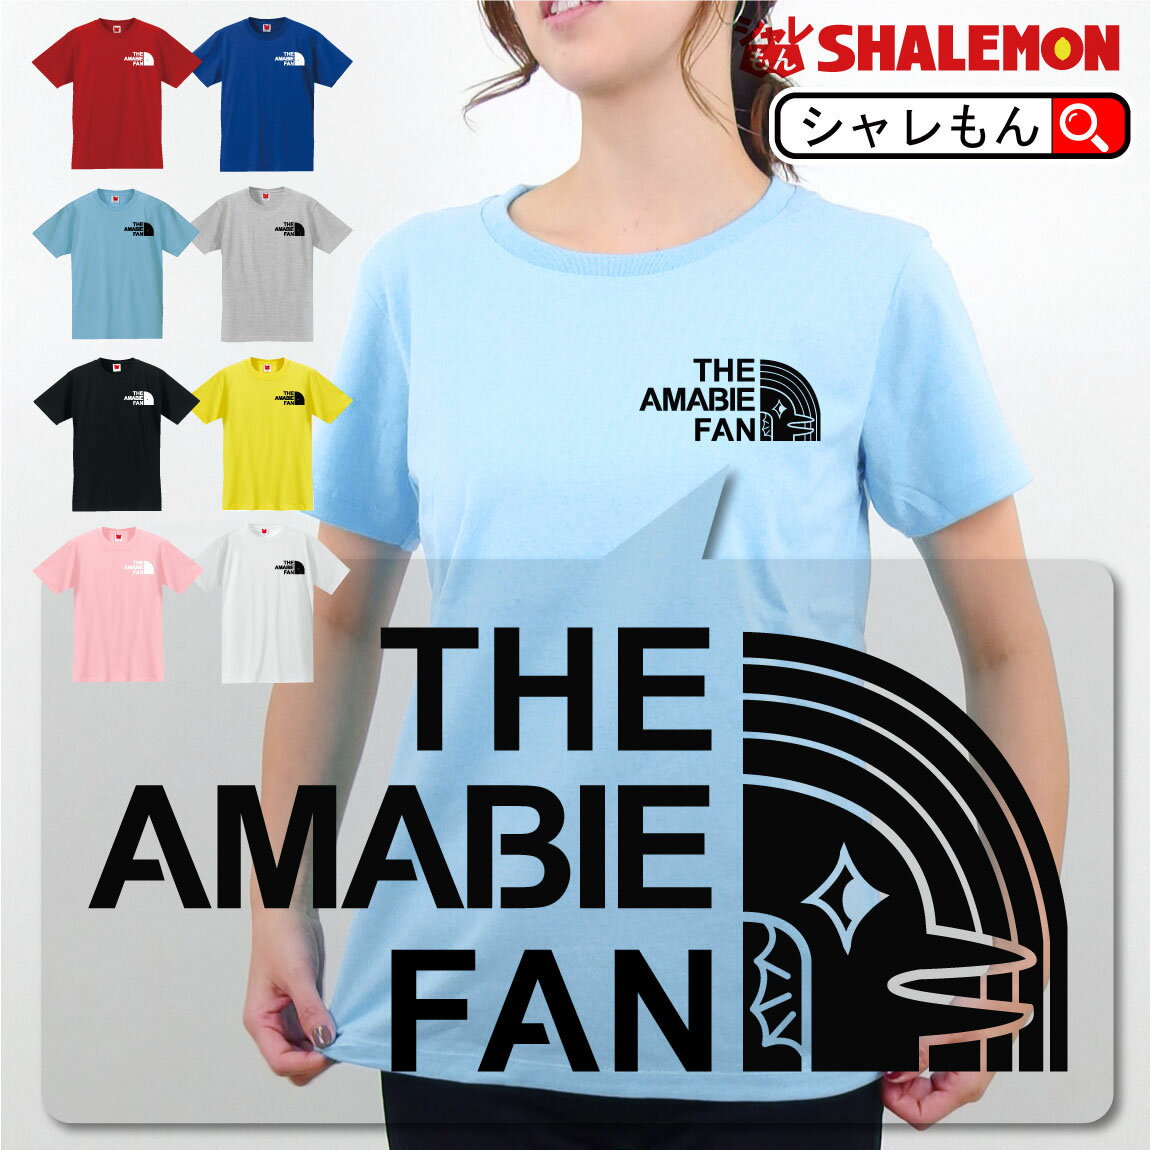 アマビエ おもしろ tシャツ 【 アマビエファン Tシャツ 】【 THE AMABIE FAN 】 男性用 女性用 子供用マスクではない…